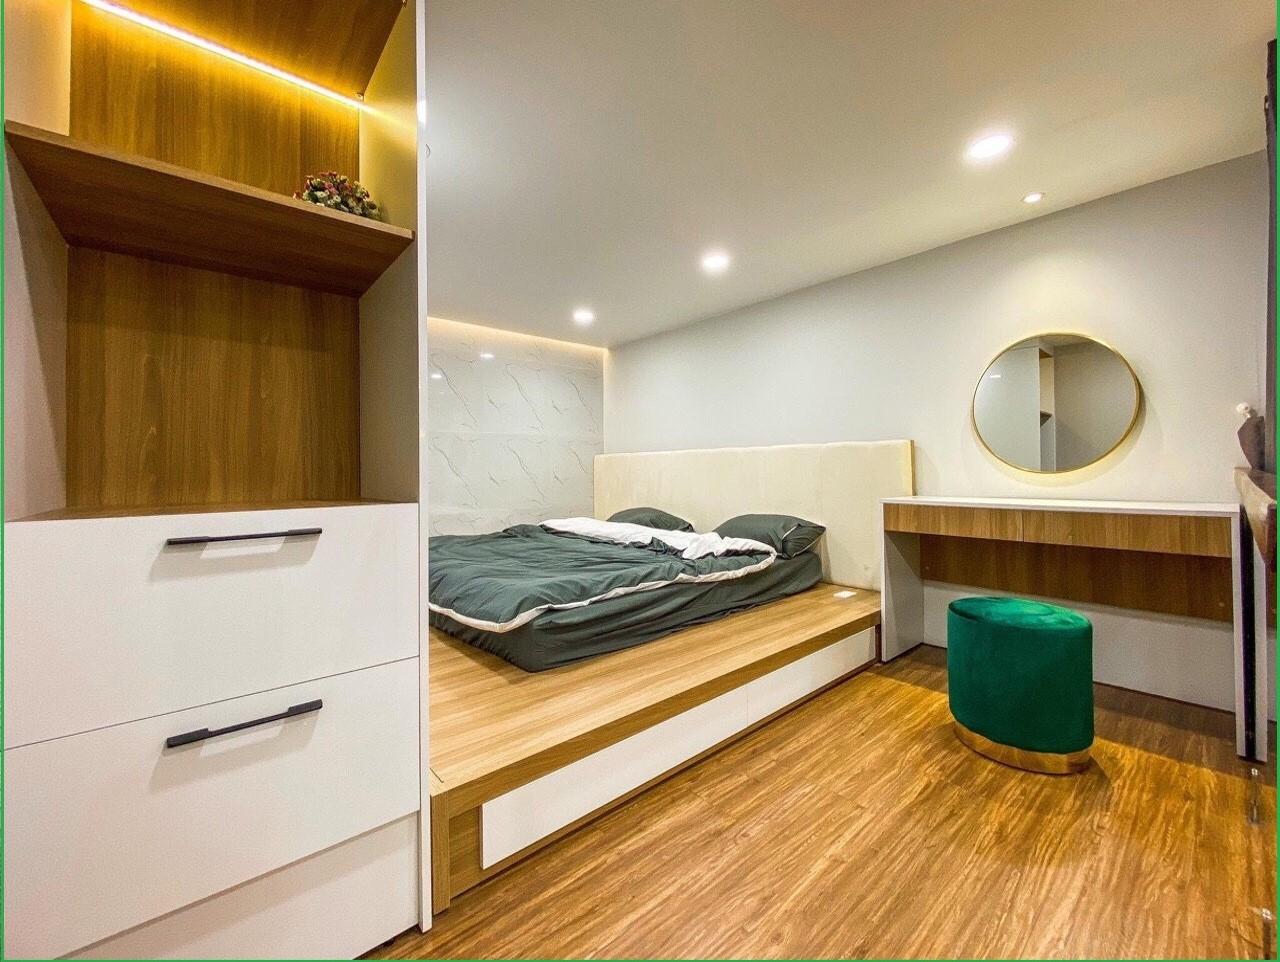 Phòng ngủ được thiết kế đơn giản nhưng không kém phần sang trọng và tinh tế